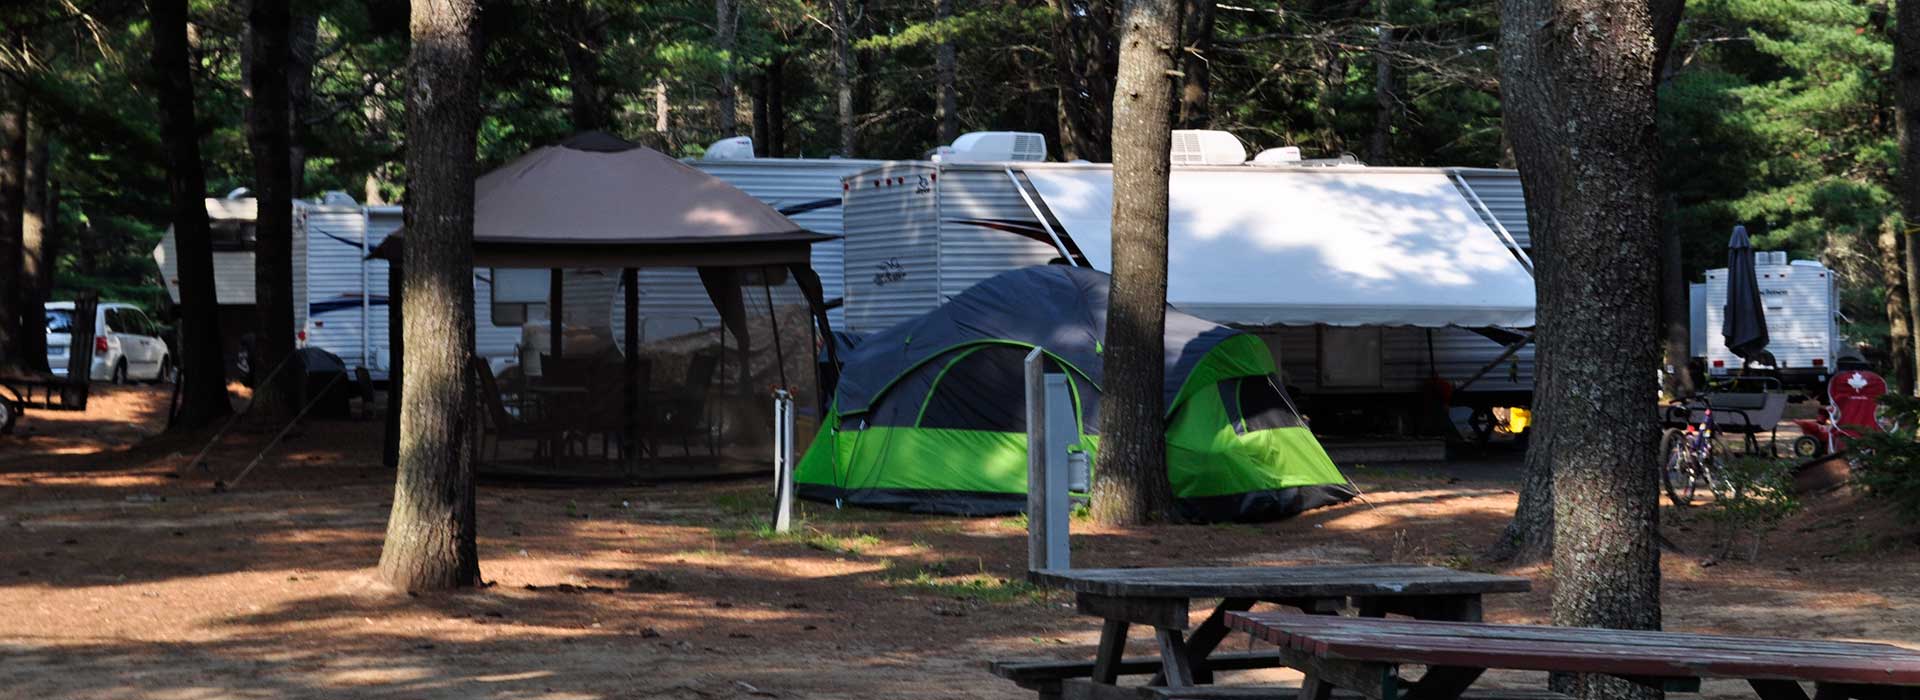 campground-header-blueberry-hill